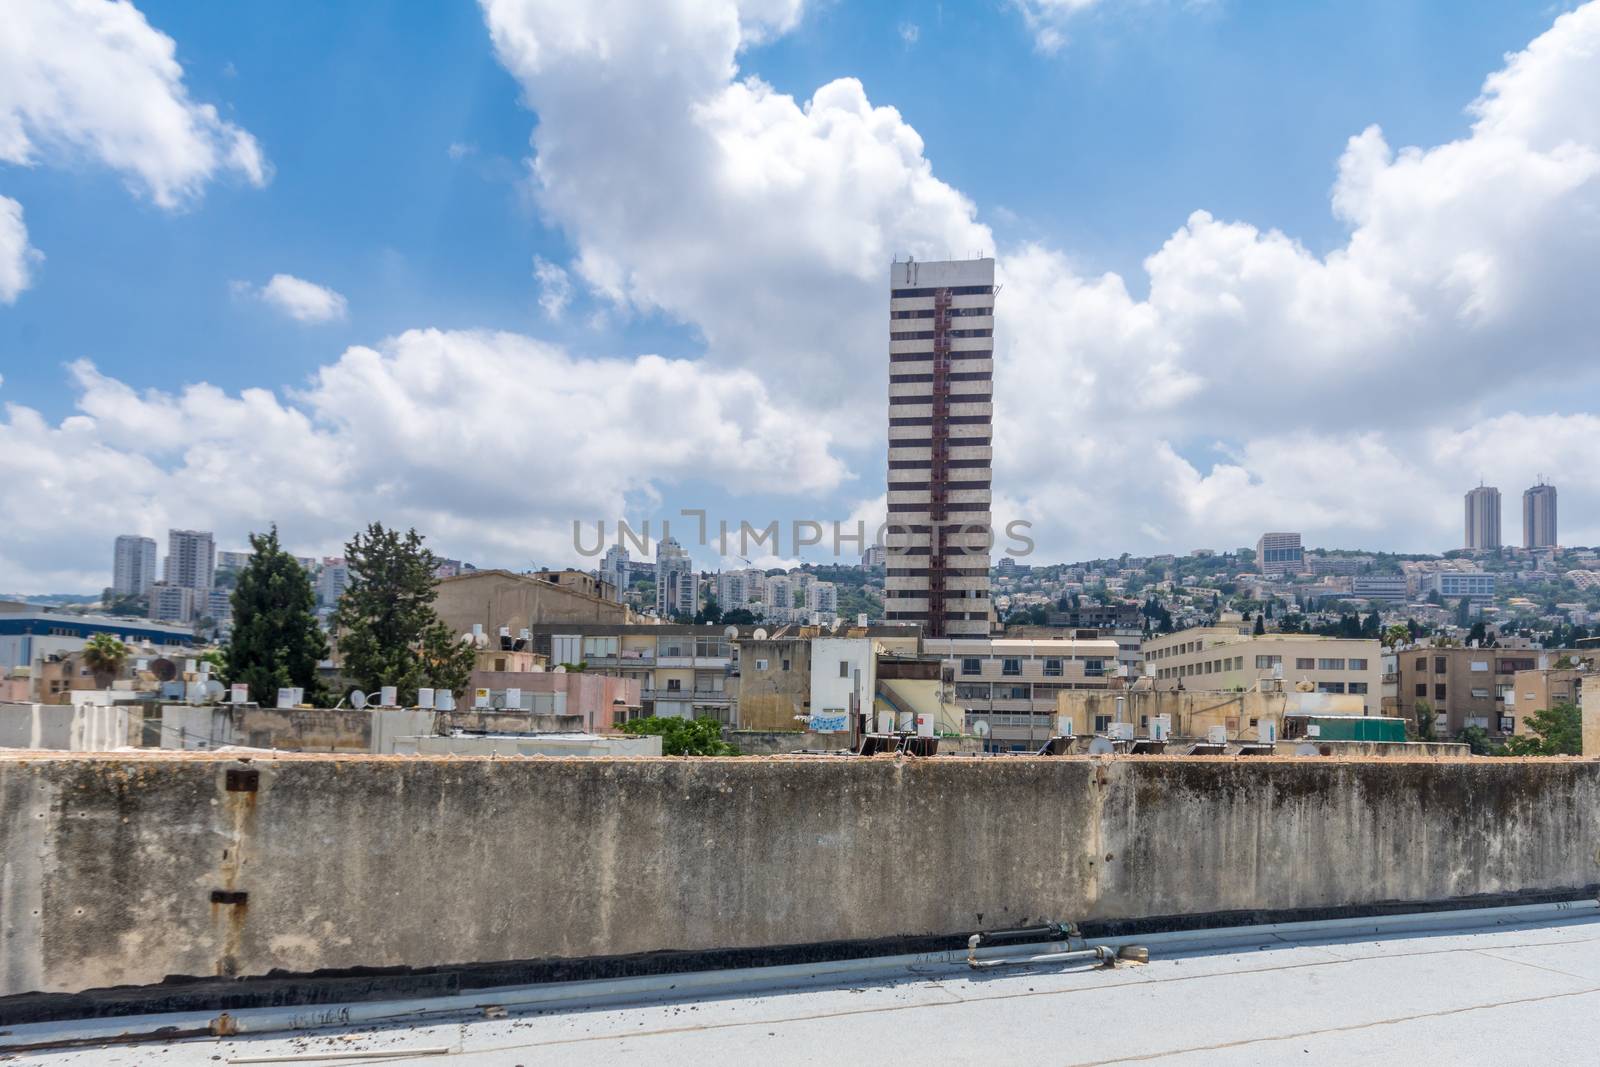 Haifa and the Carmel mountain by RnDmS